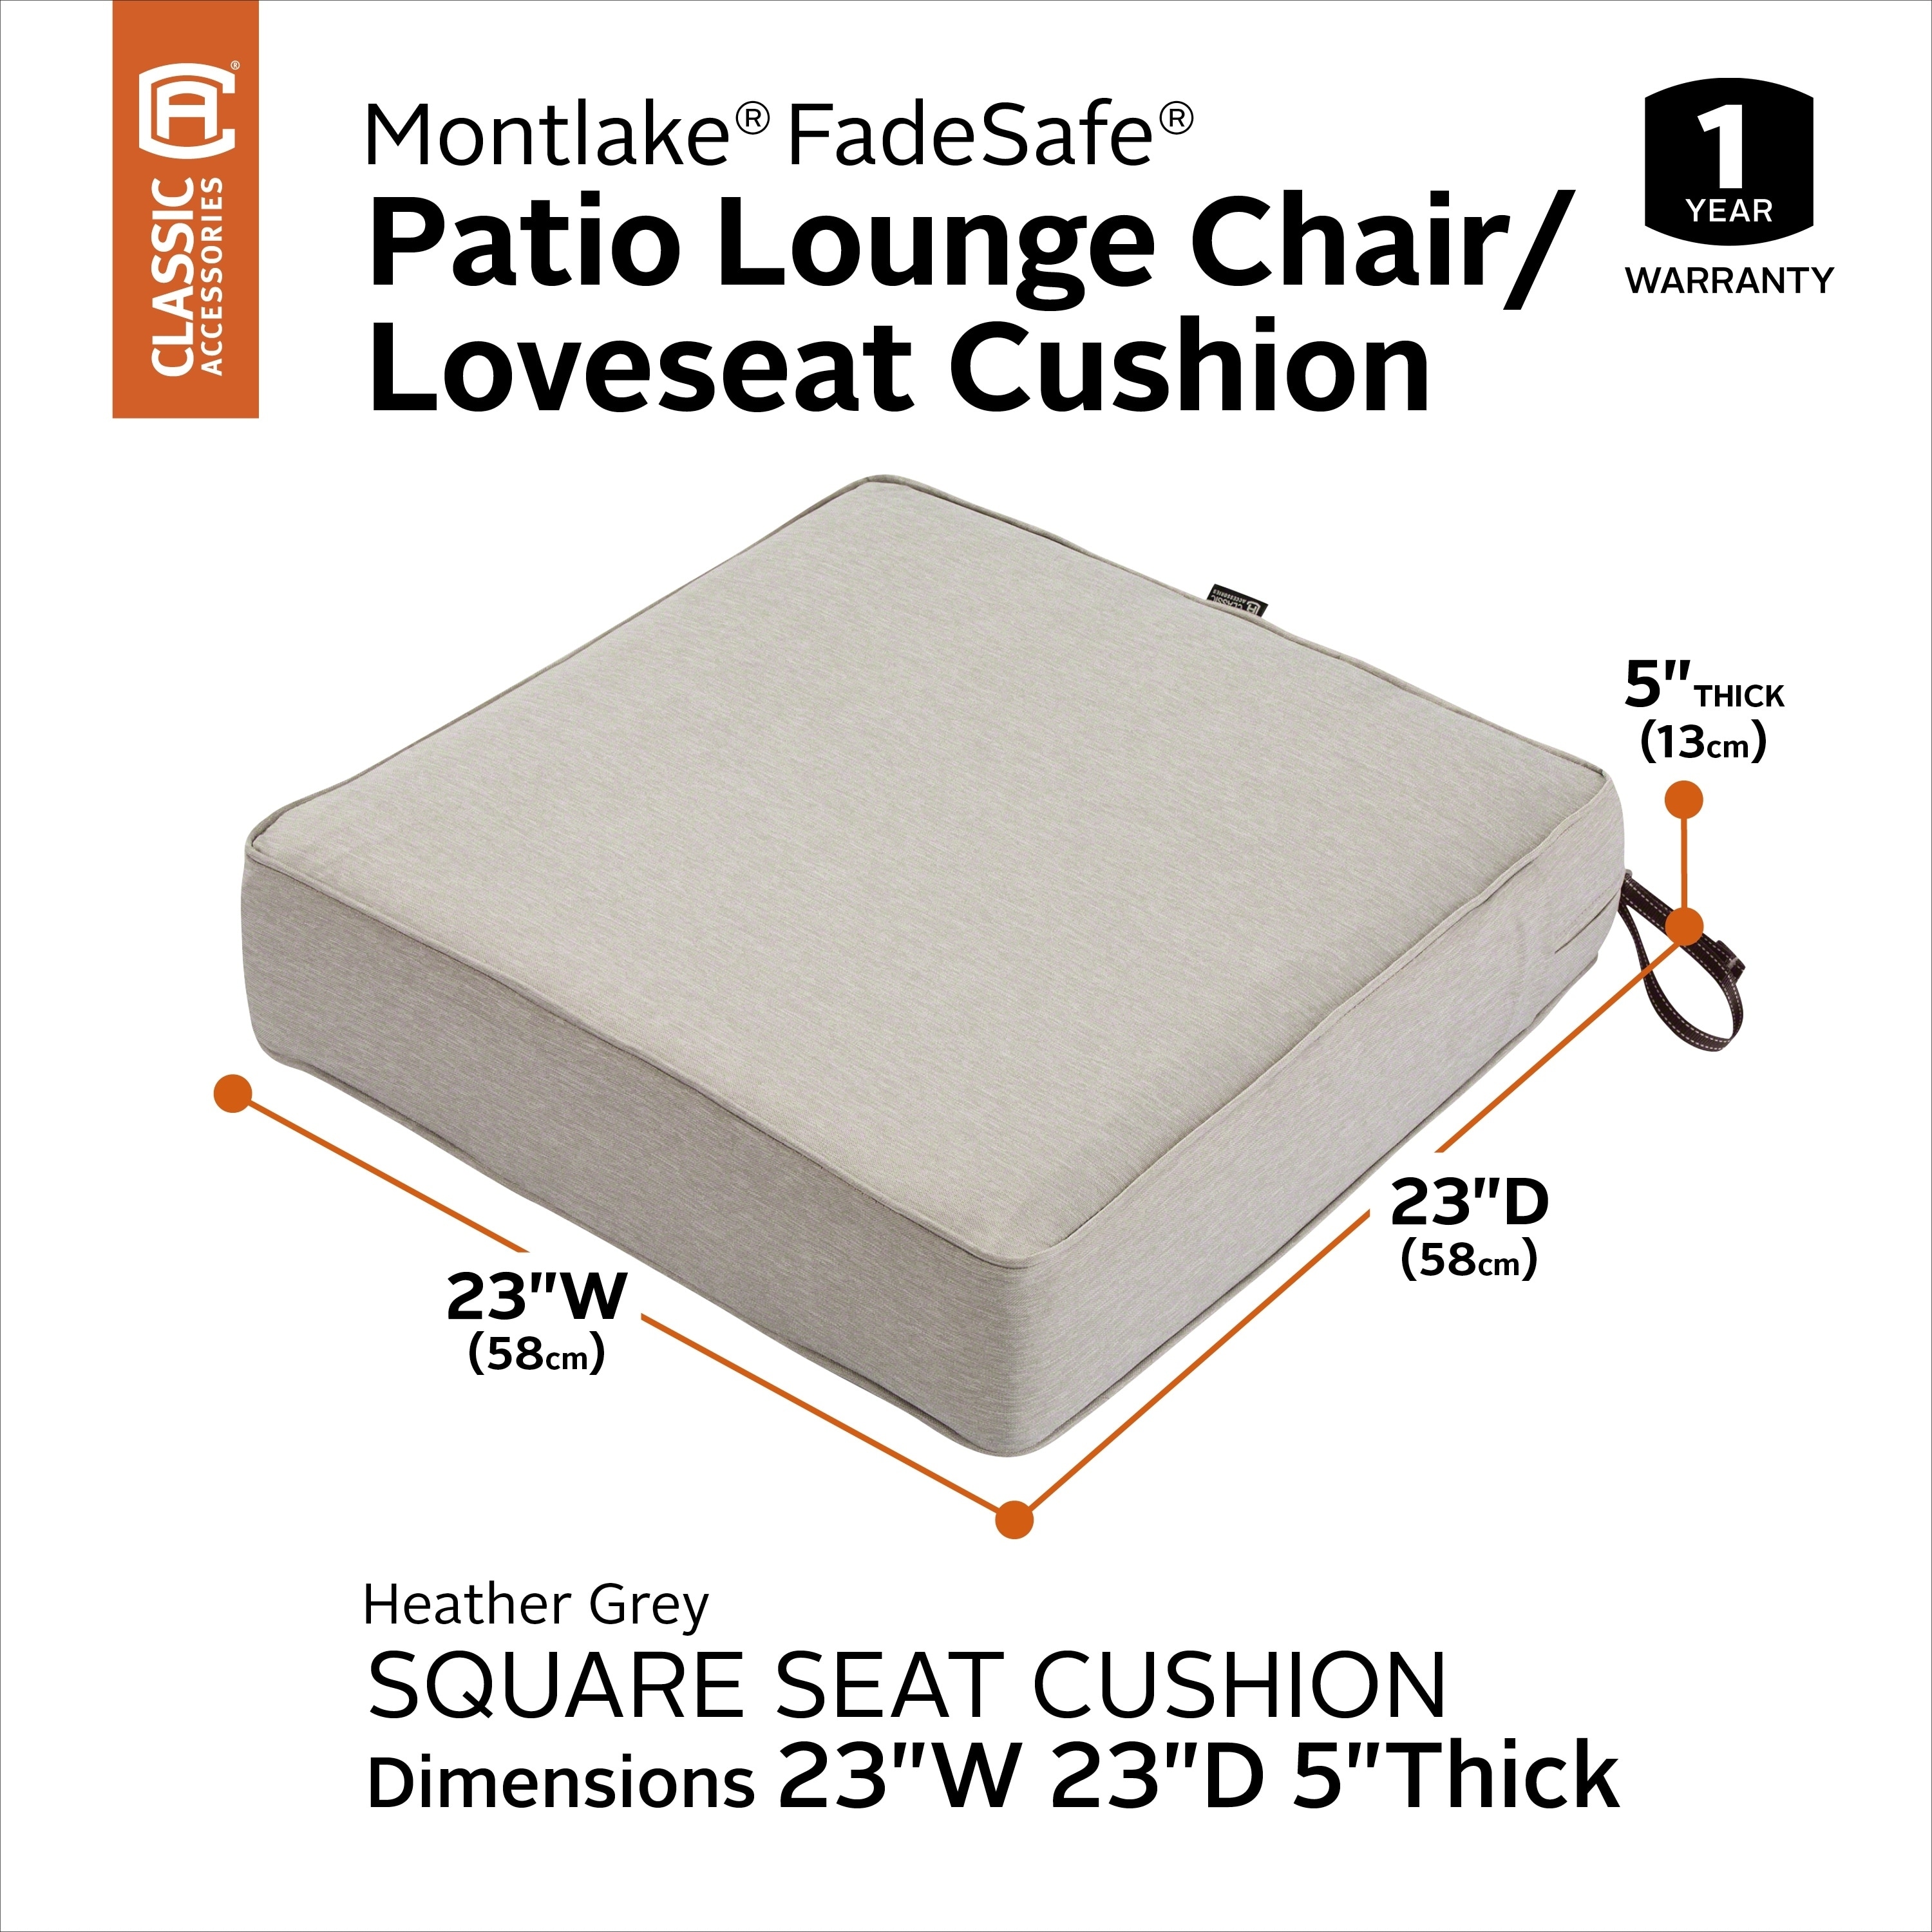 Classic Accessories 19 x 19 x 3 inch Square Patio Cushion Foam